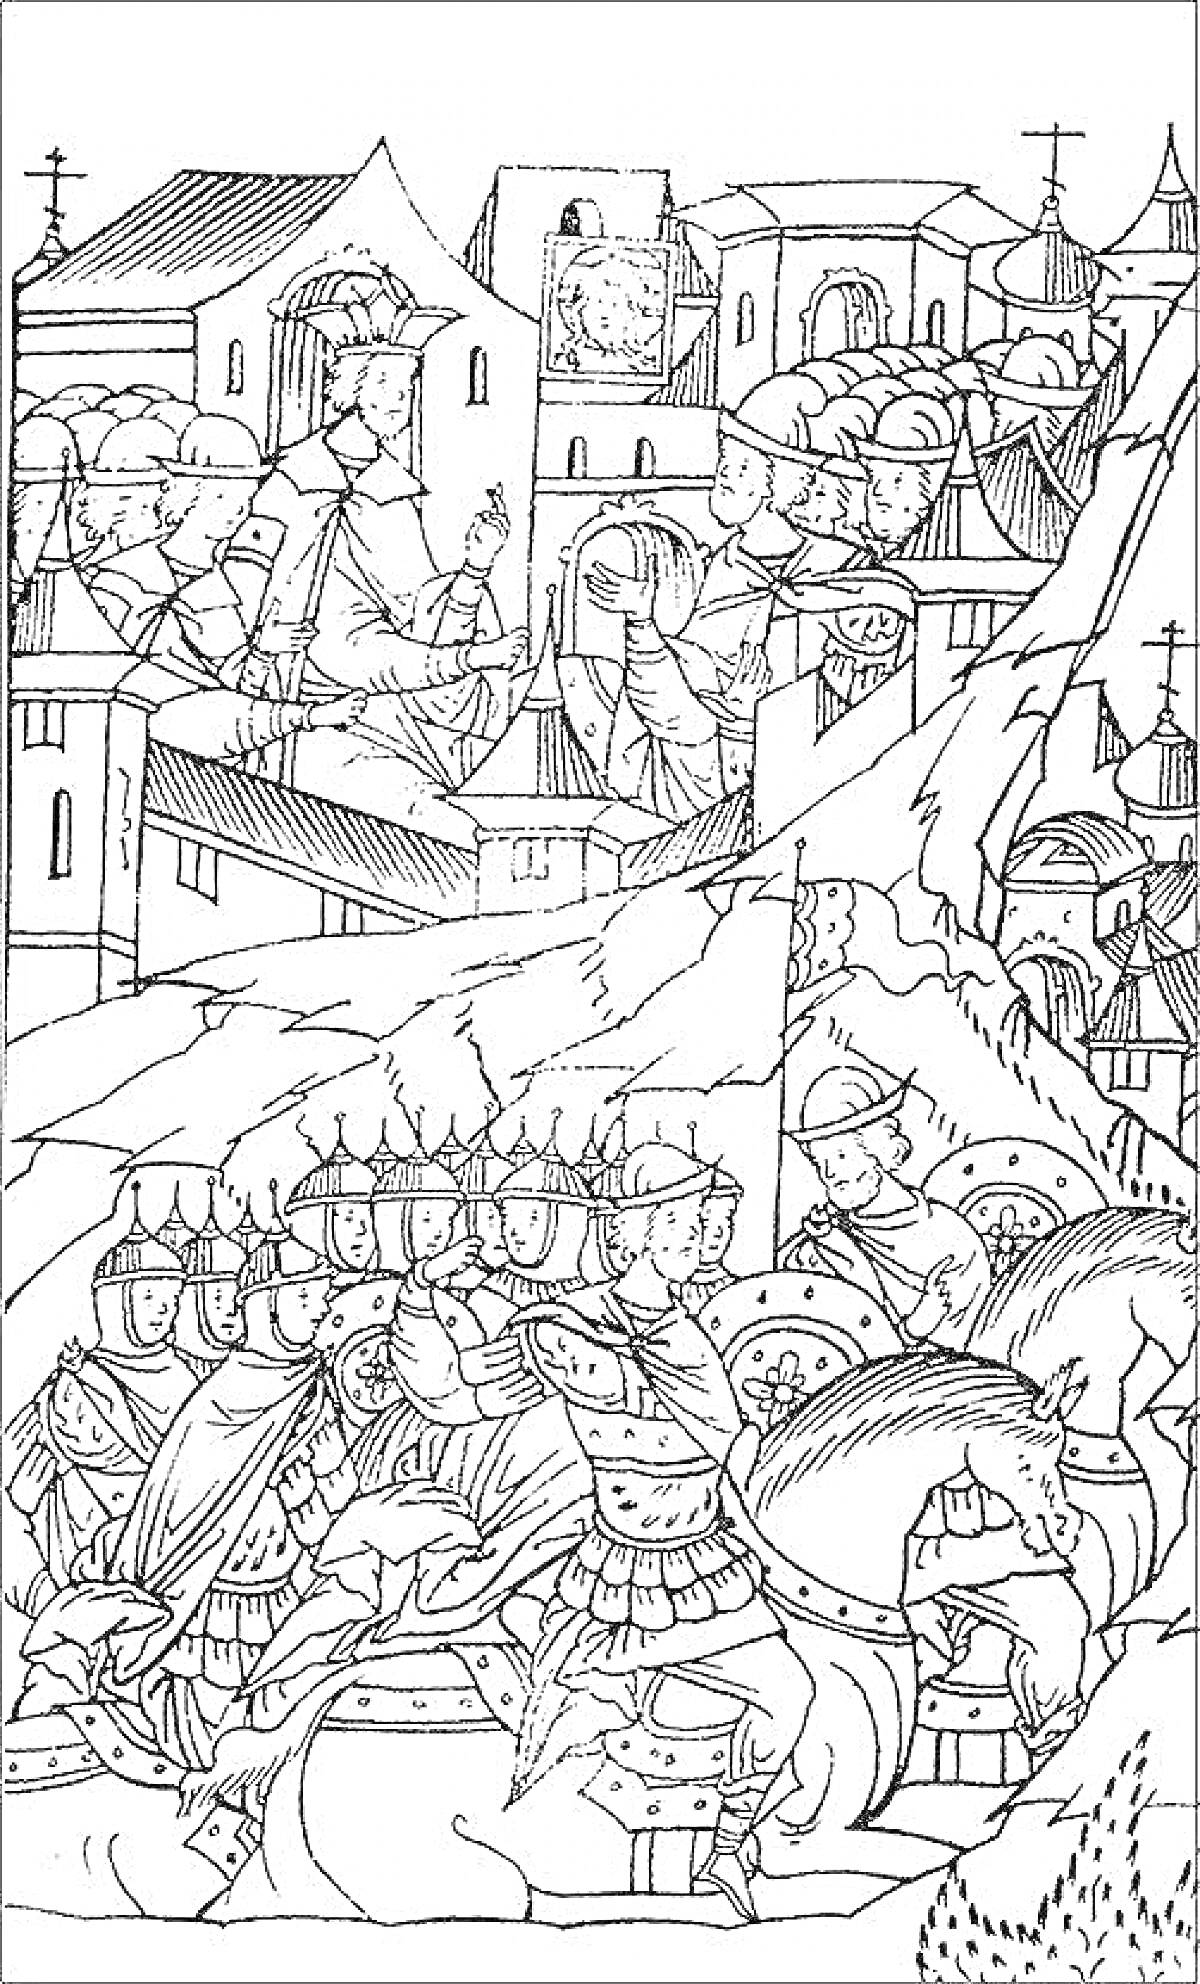 Раскраска Военный поход на фоне крепости и дворцов, всадники в шлемах и доспехах, за ними город с башнями, везде присутствуют многочисленные архитектурные элементы и персонажи